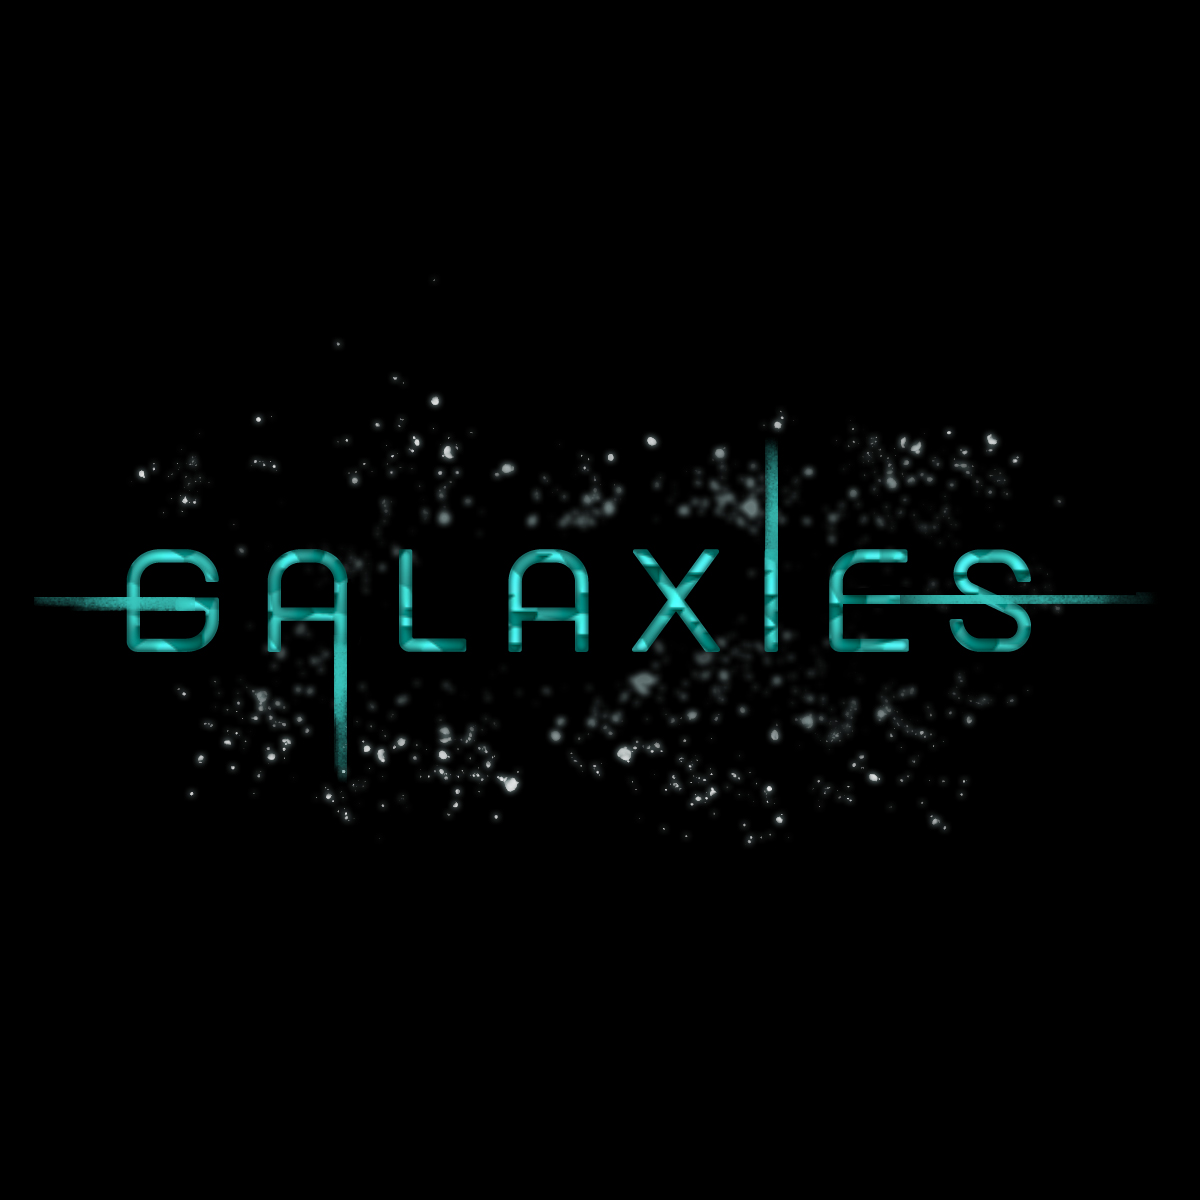 Galaxies logo